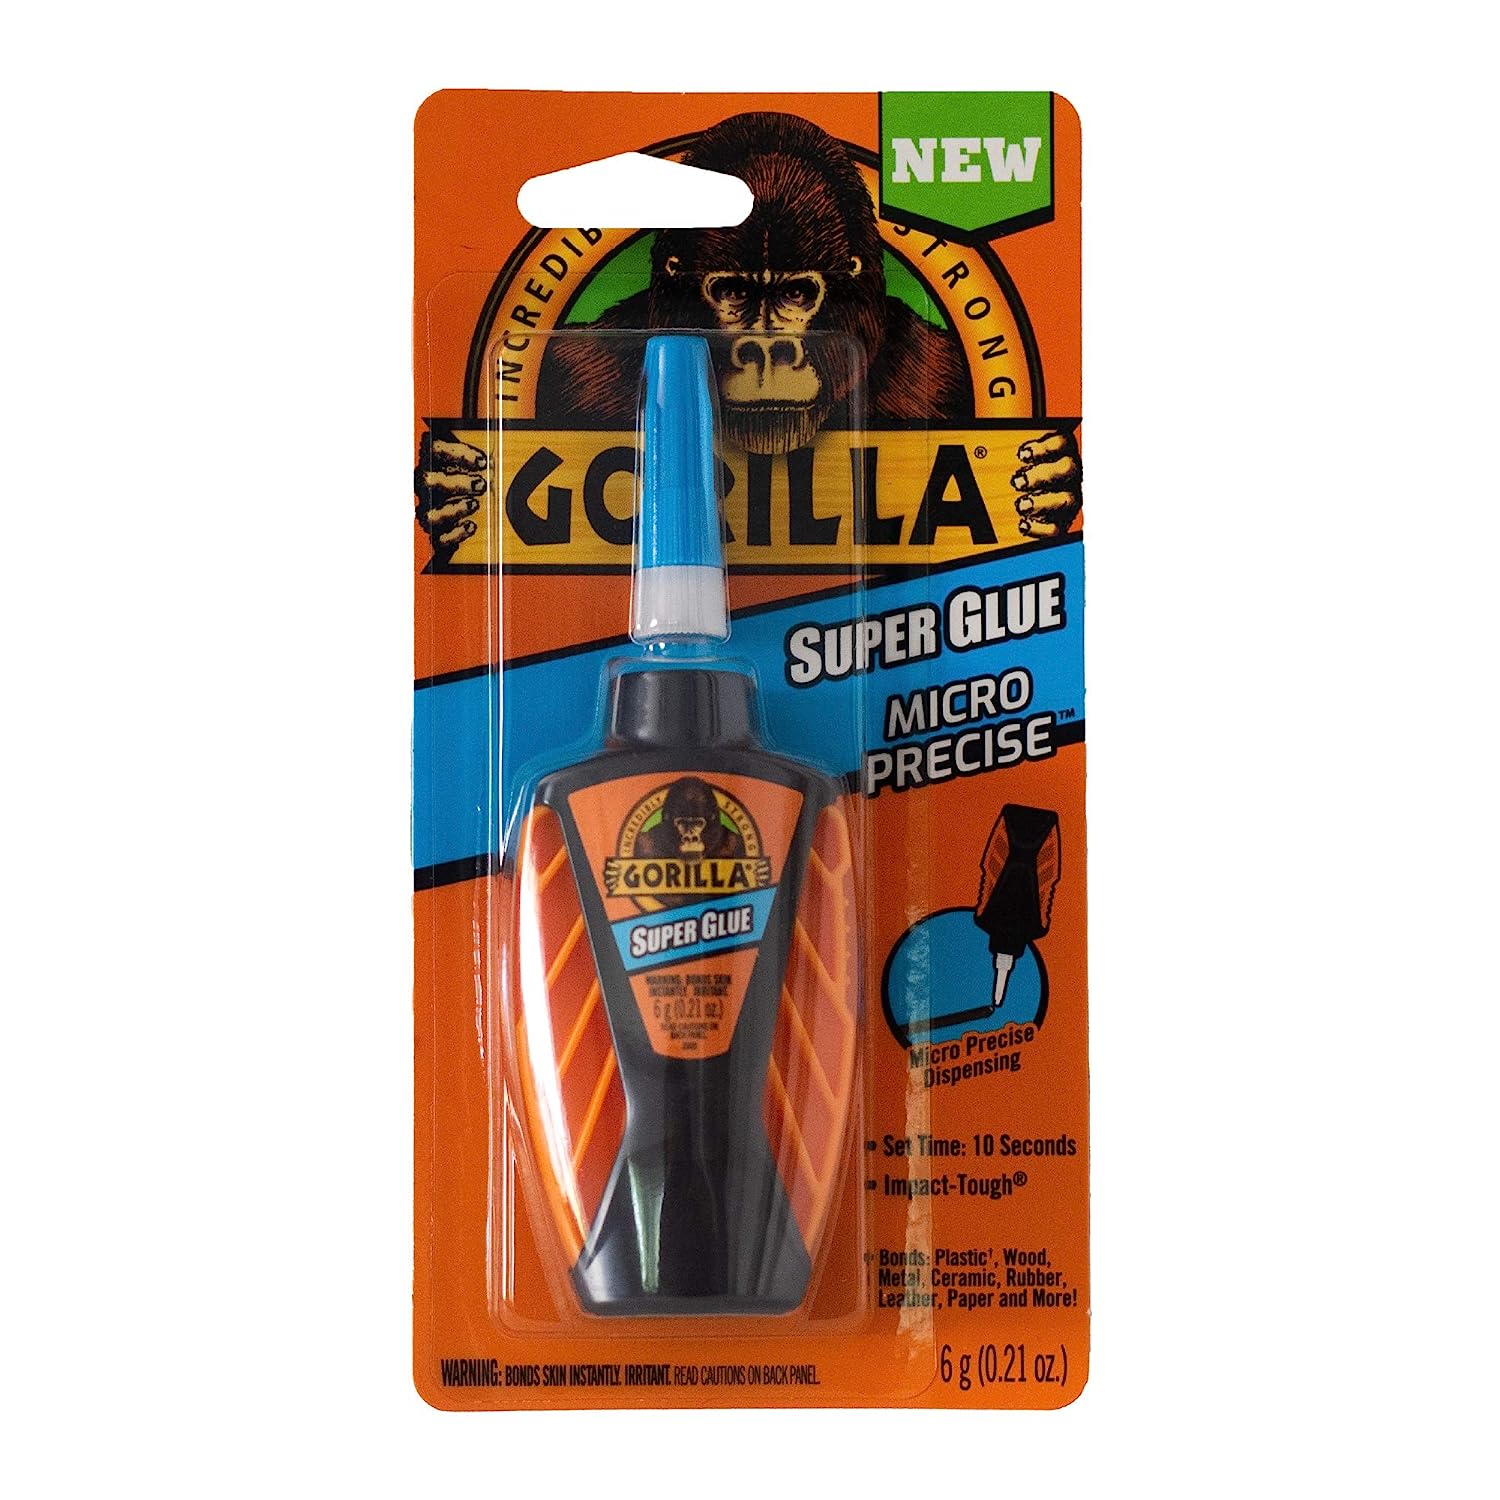 Gorilla Micro Precise Super Glue, 6 Gram, Clear, (Pack of 1)